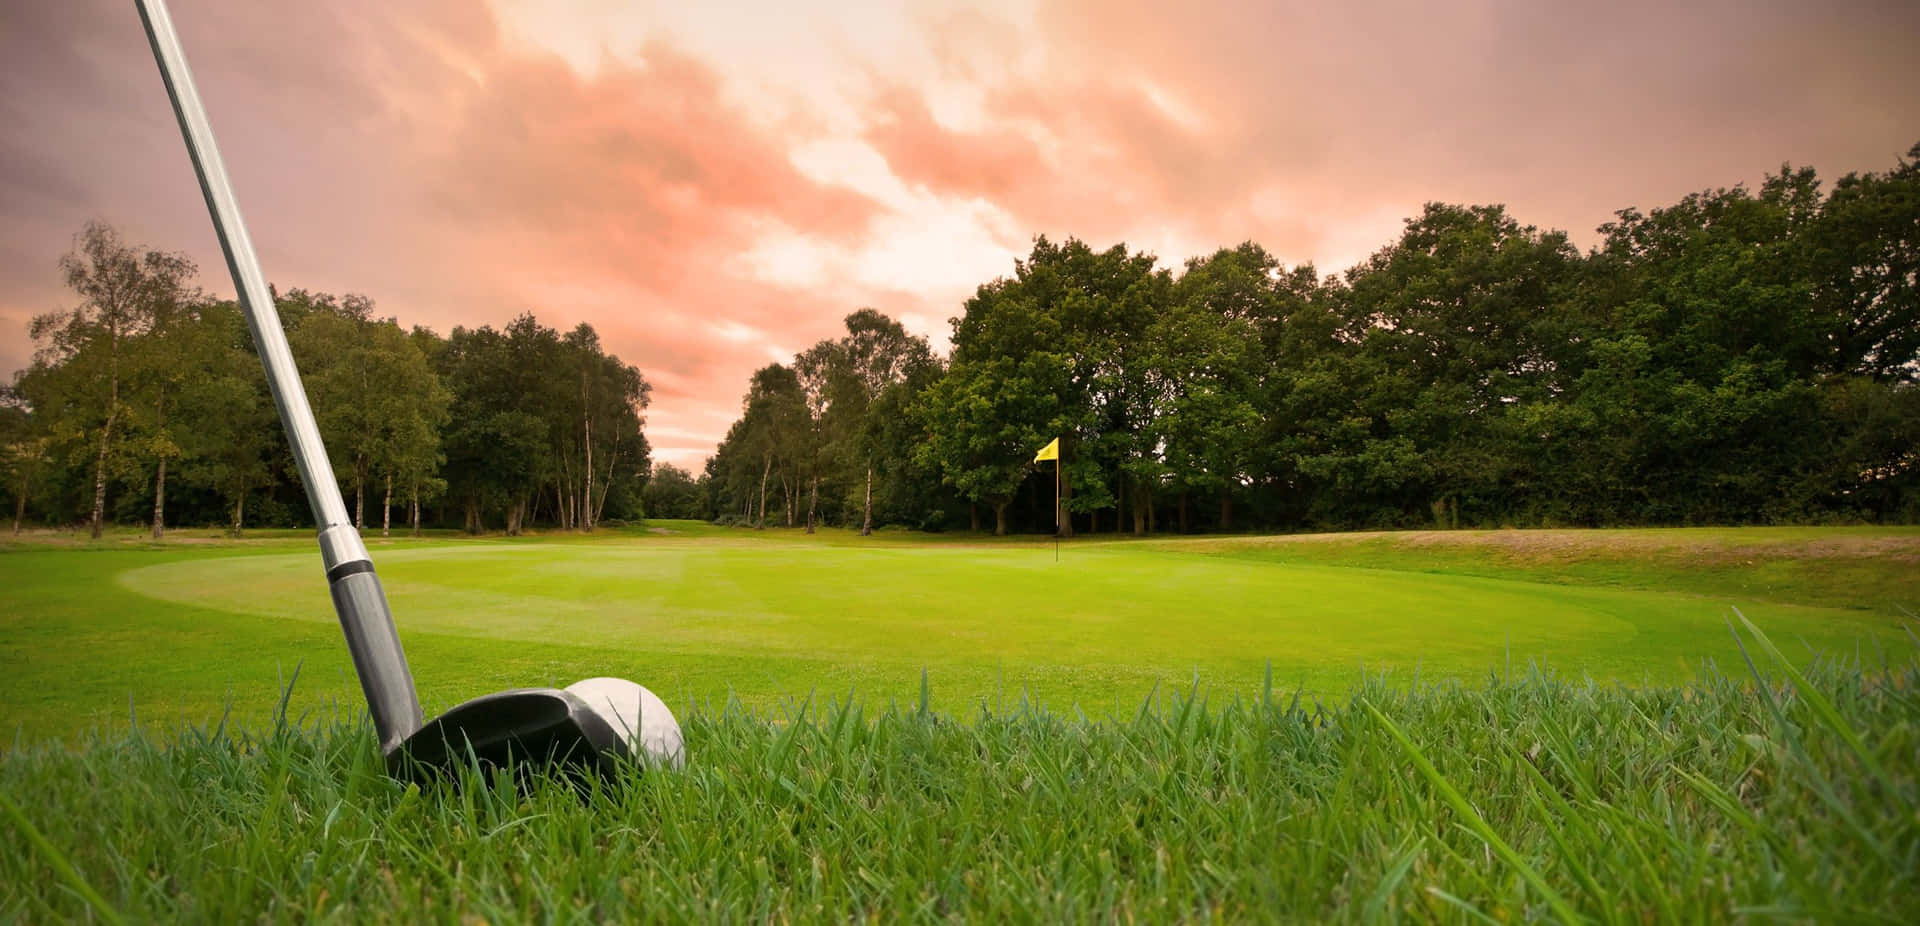 Disfrutadel Juego De Golf Con Impresionantes Fondos De Pantalla De Golf. Fondo de pantalla